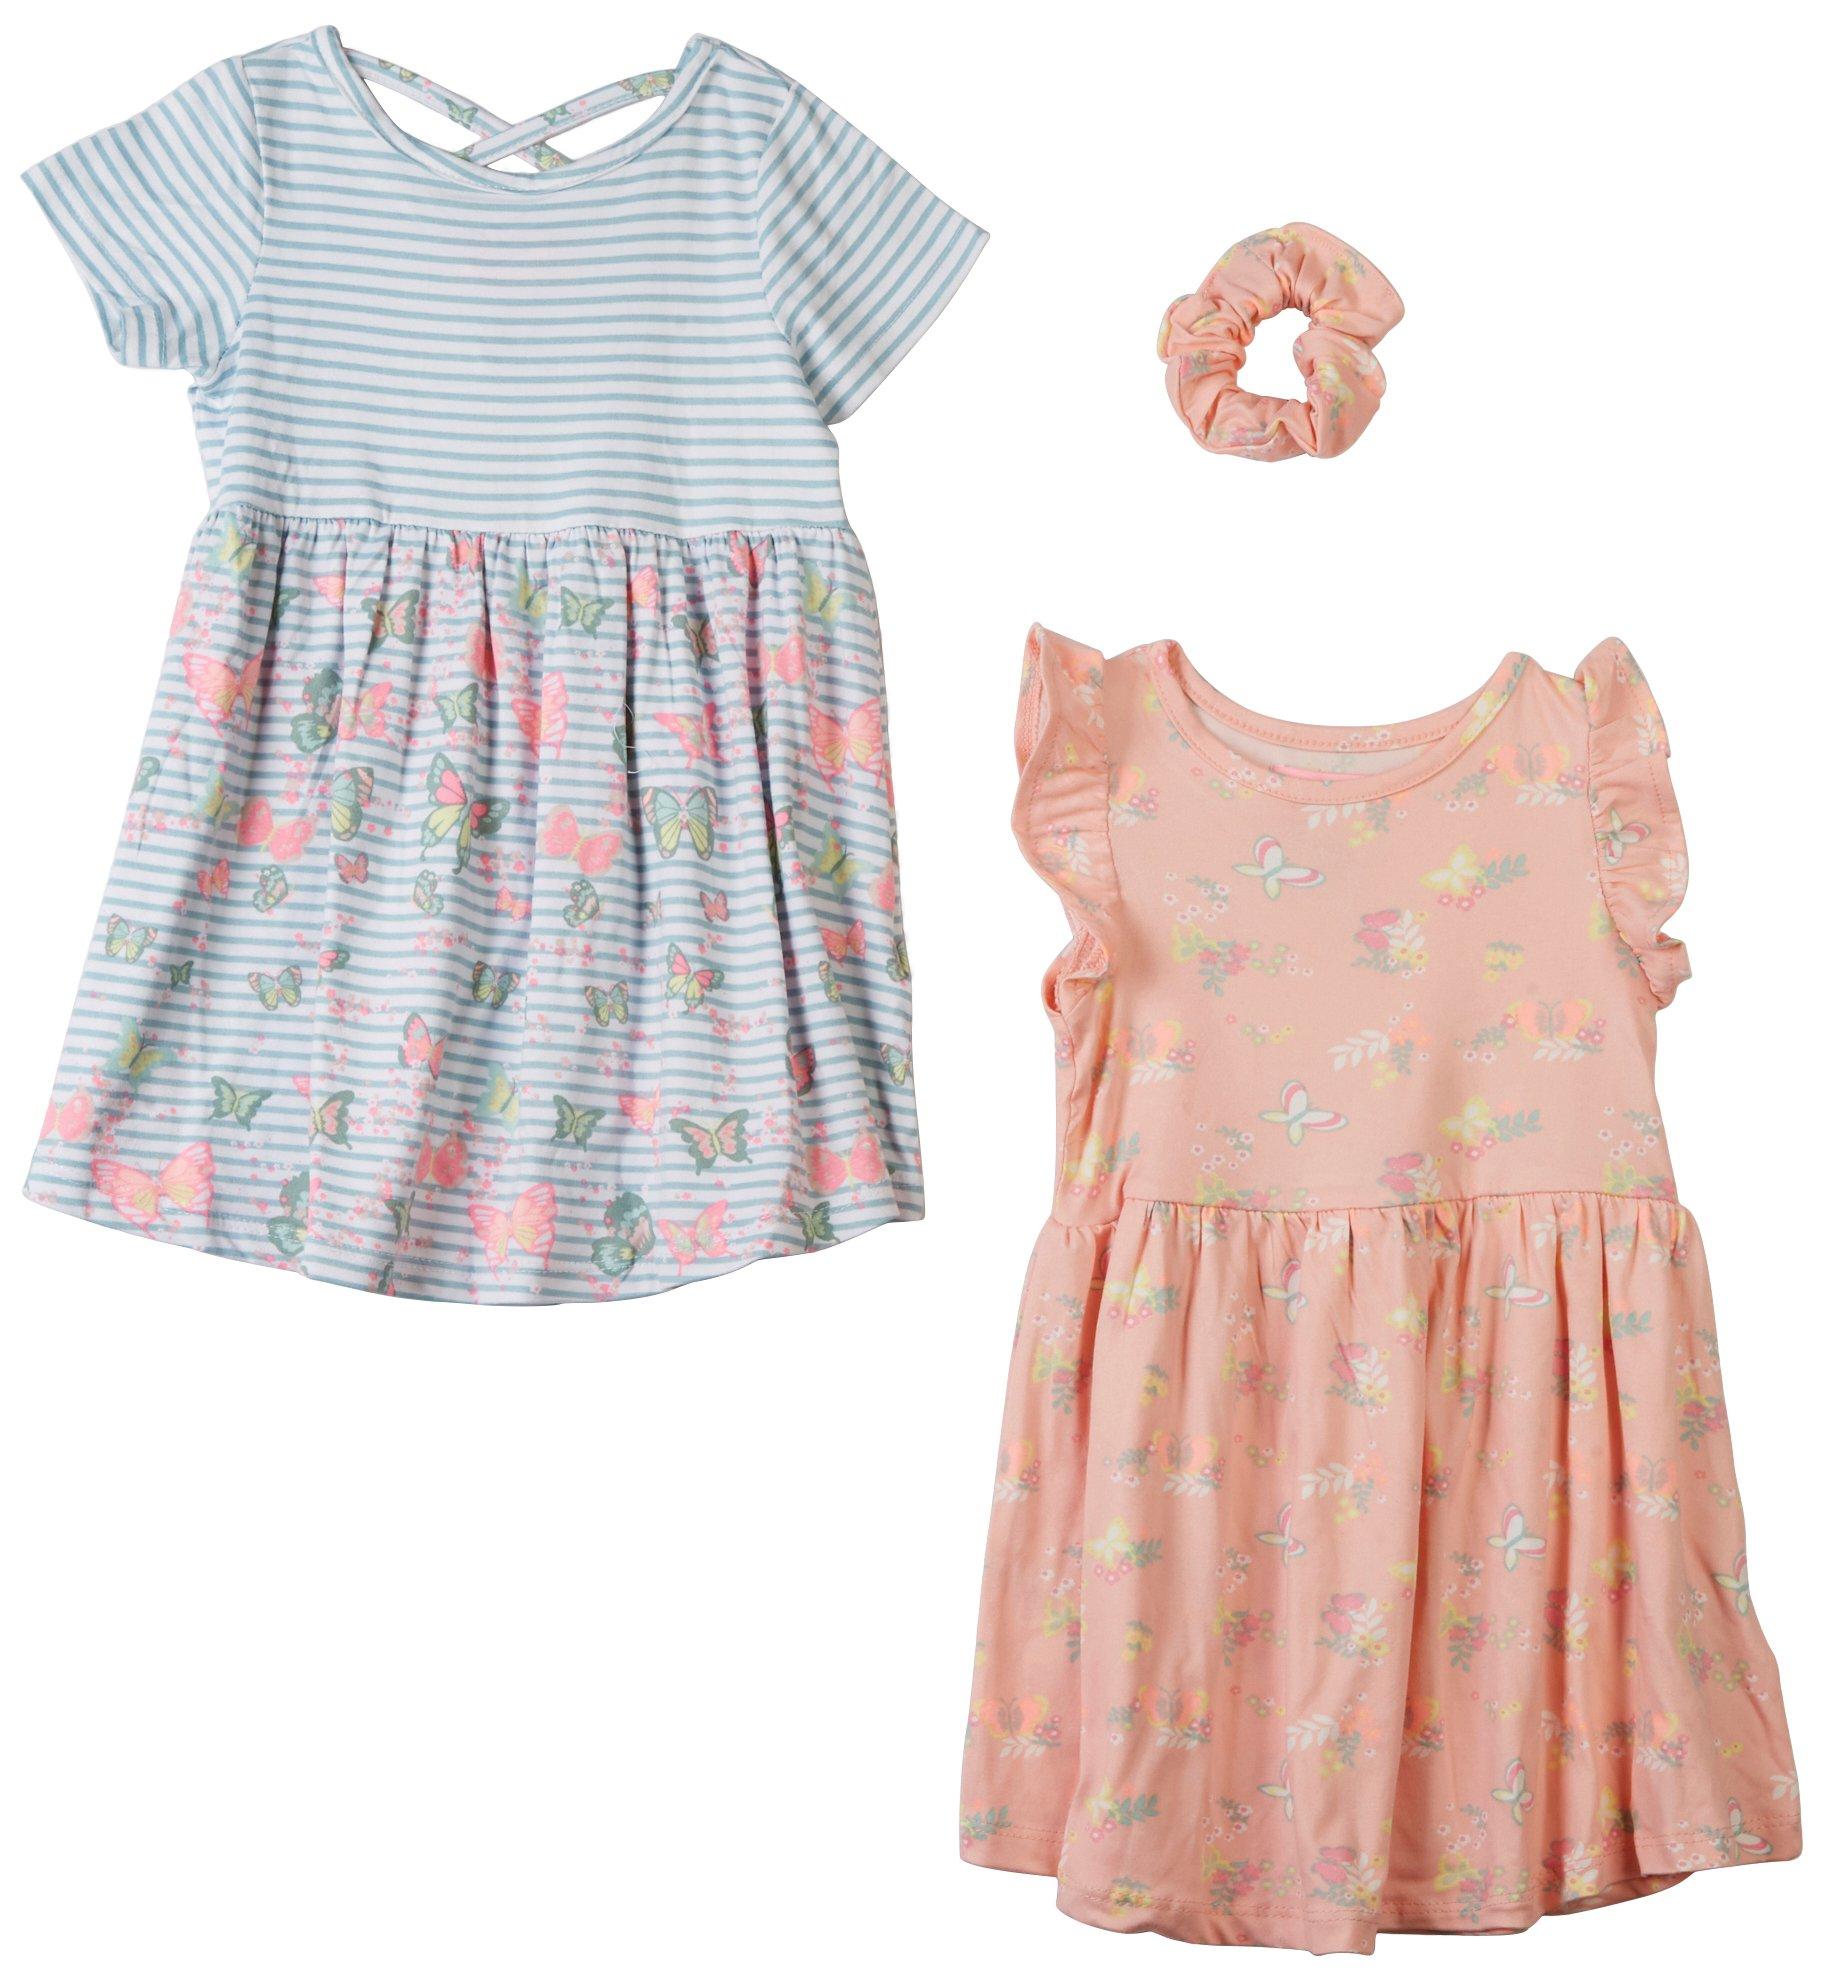 Toddler Girls 3 Pc. Butterfly Dress Set